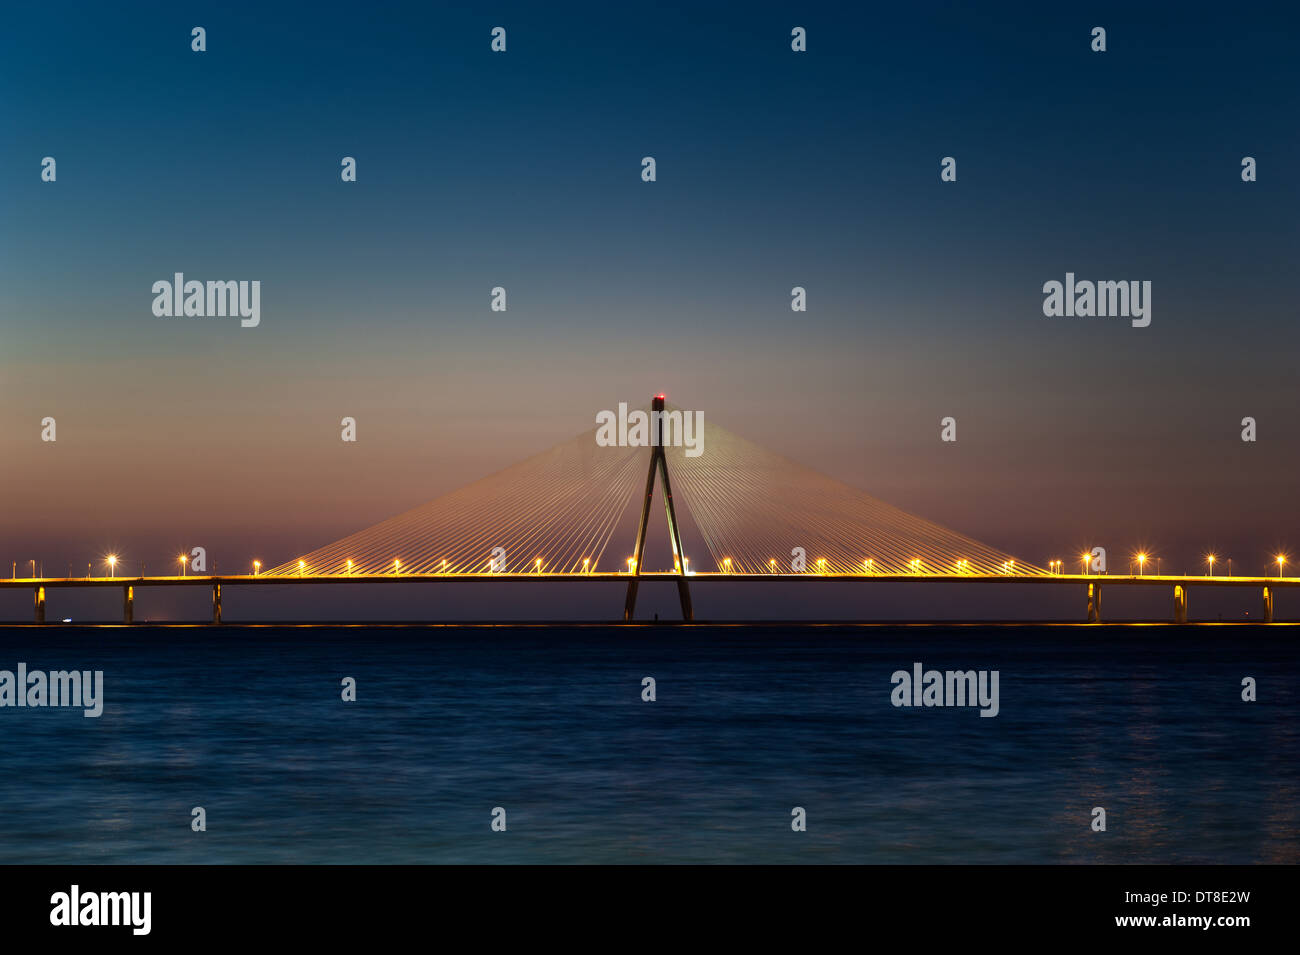 Abends Sonnenuntergang die Hauptspannweite der Brücke Bandra Worli Sea Link. Ein Beweis für die technologische Entwicklung Indiens. Stockfoto